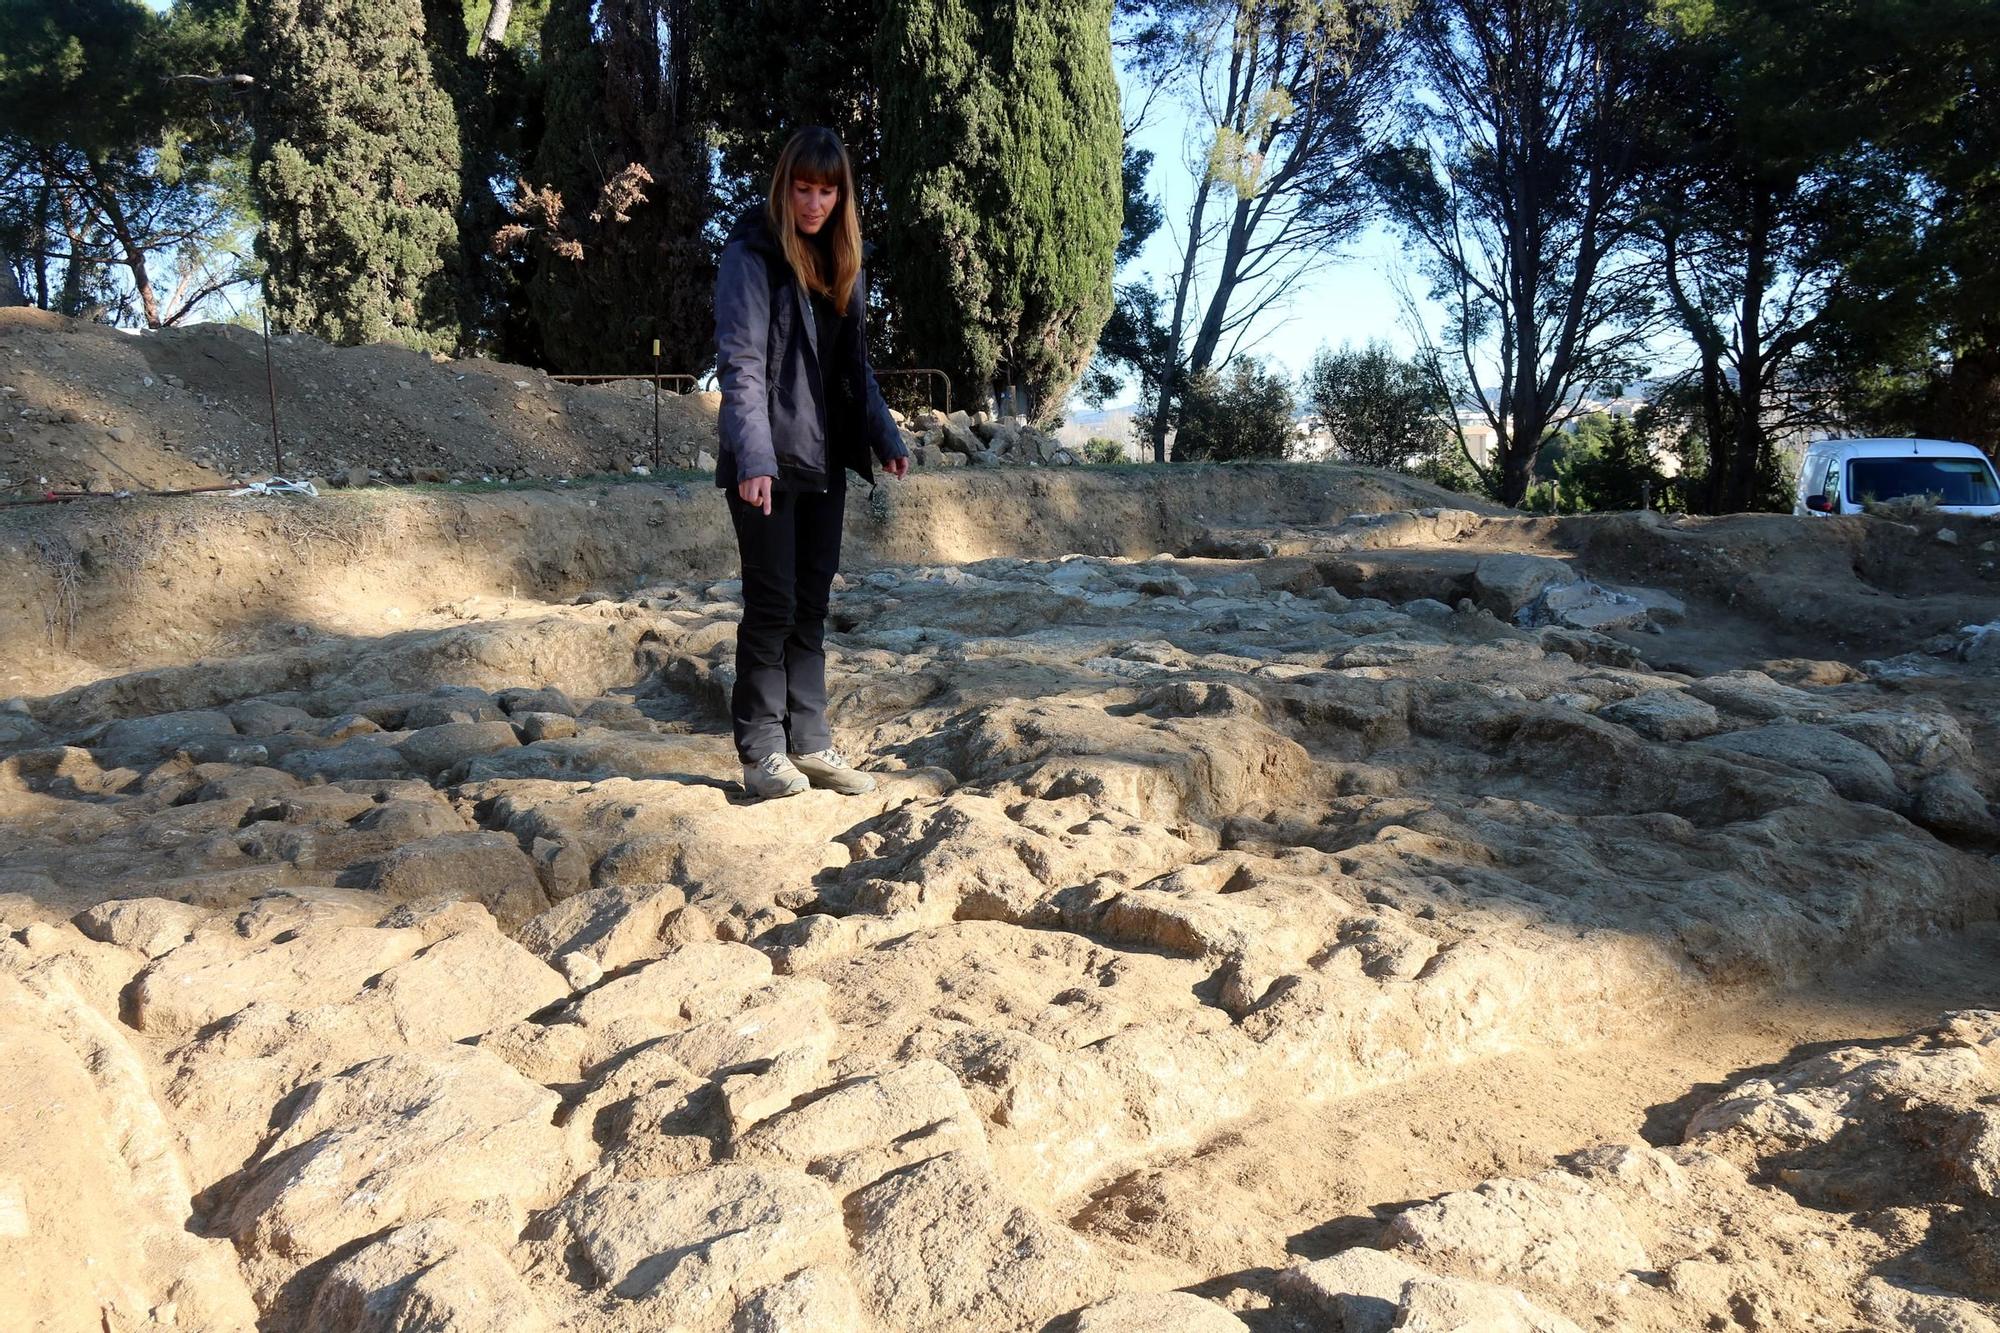 Les restes de l'antiga vil·la romana del Collet de Sant Antoni de Calonge